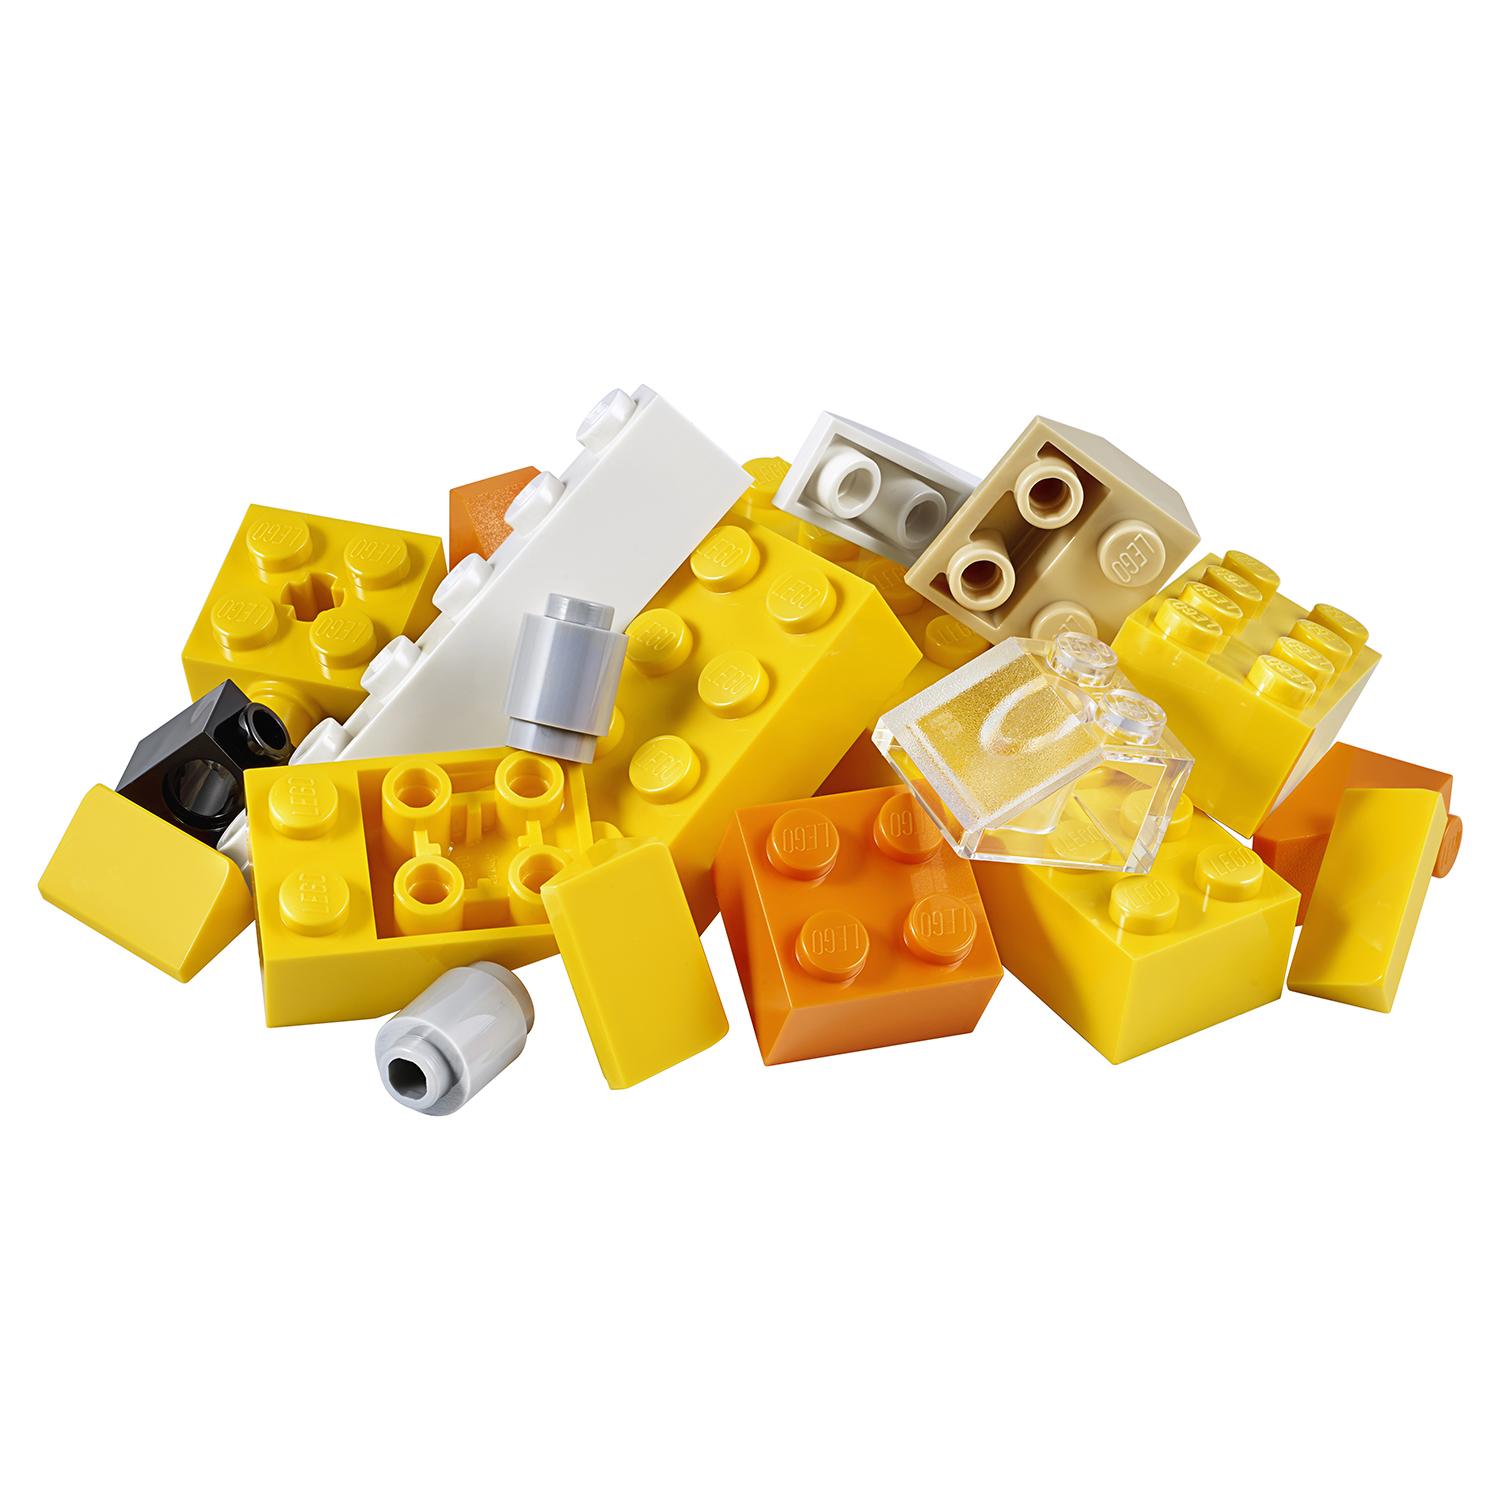 Конструктор LEGO Classic - Базовый набор кубиков